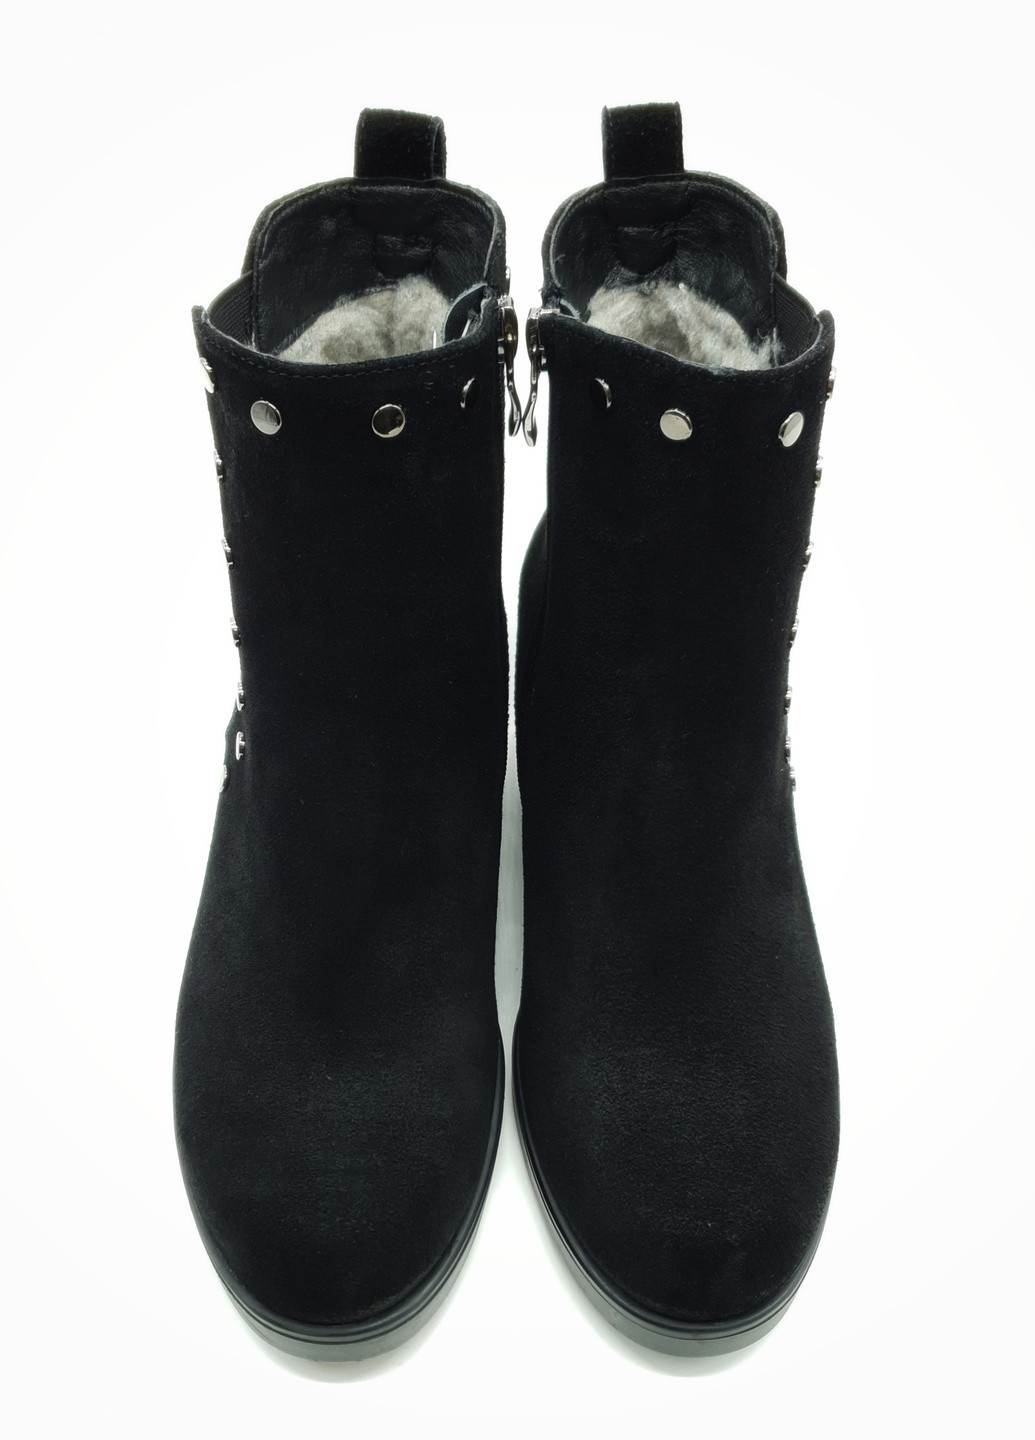 Осенние женские ботинки зимние черные замшевые p-19-3 24 см (р) patterns